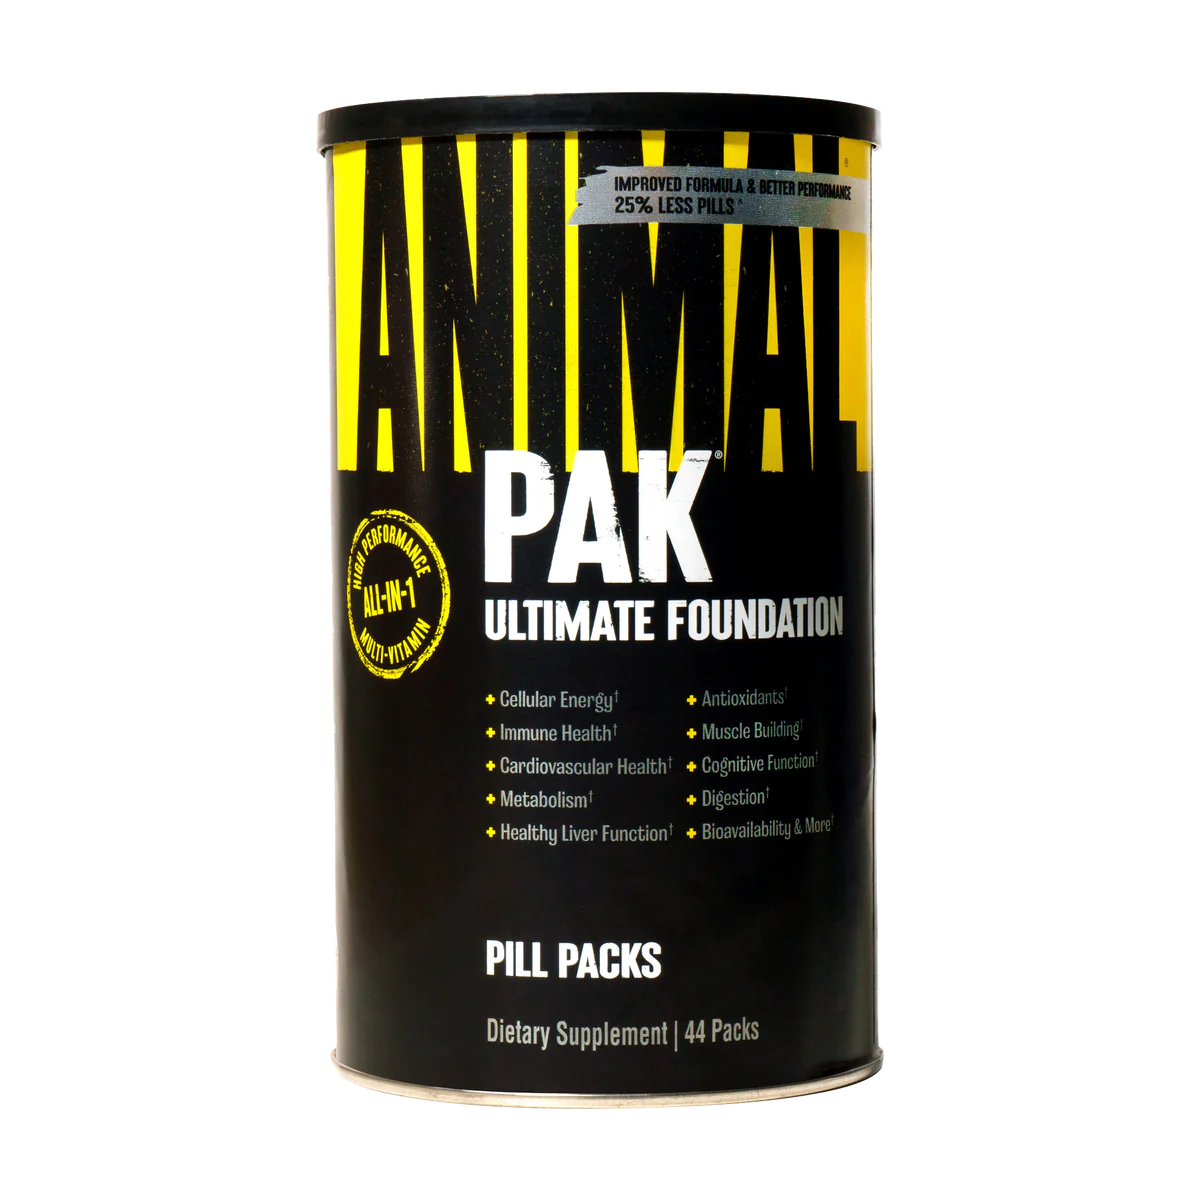 Animal Pak bottle 